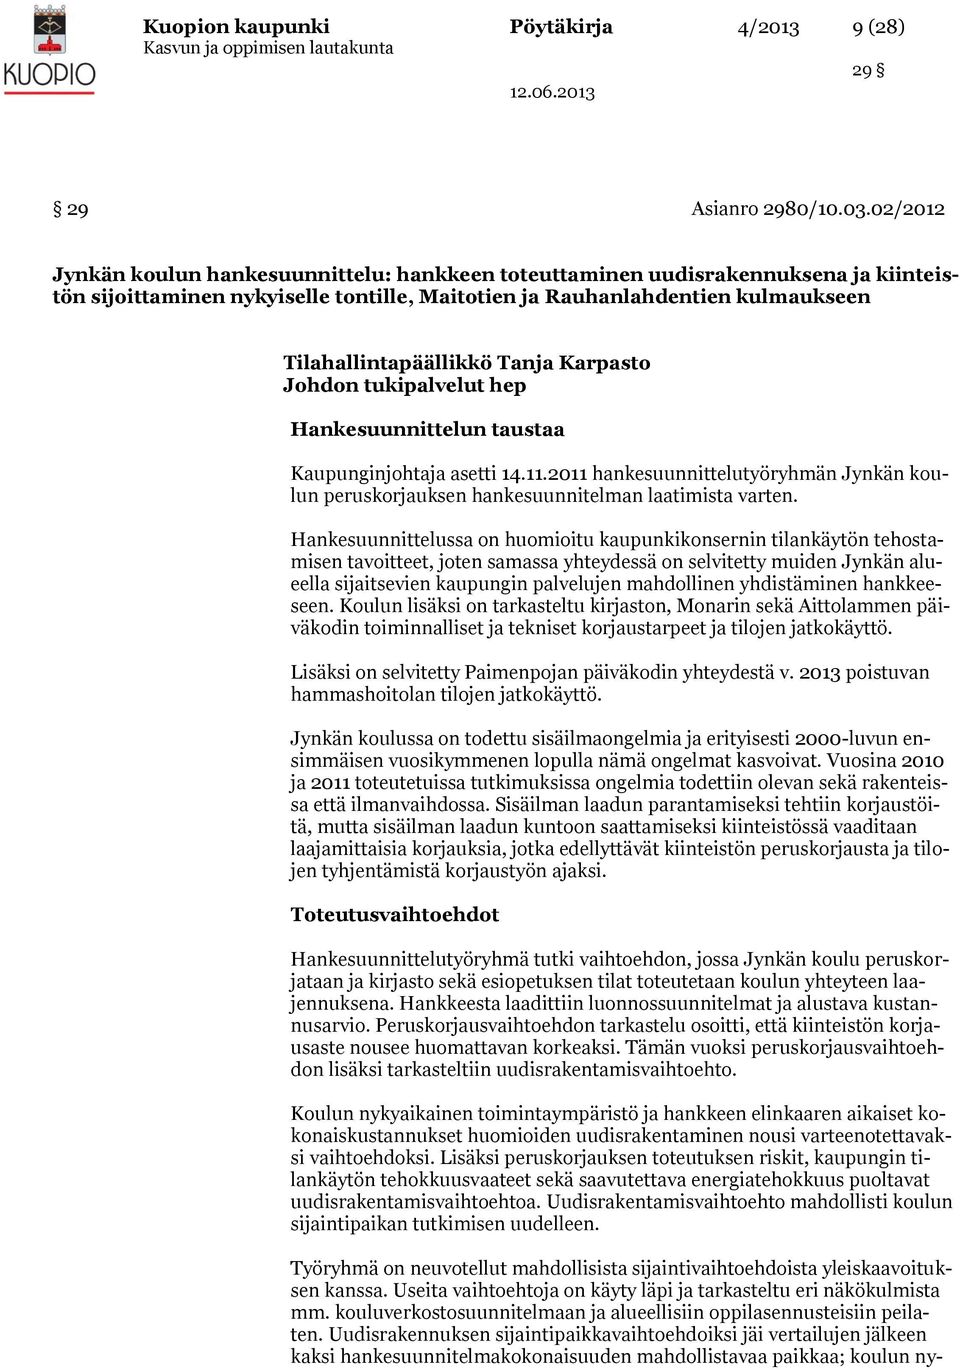 Tanja Karpasto Johdon tukipalvelut hep Hankesuunnittelun taustaa Kaupunginjohtaja asetti 14.11.2011 hankesuunnittelutyöryhmän Jynkän koulun peruskorjauksen hankesuunnitelman laatimista varten.